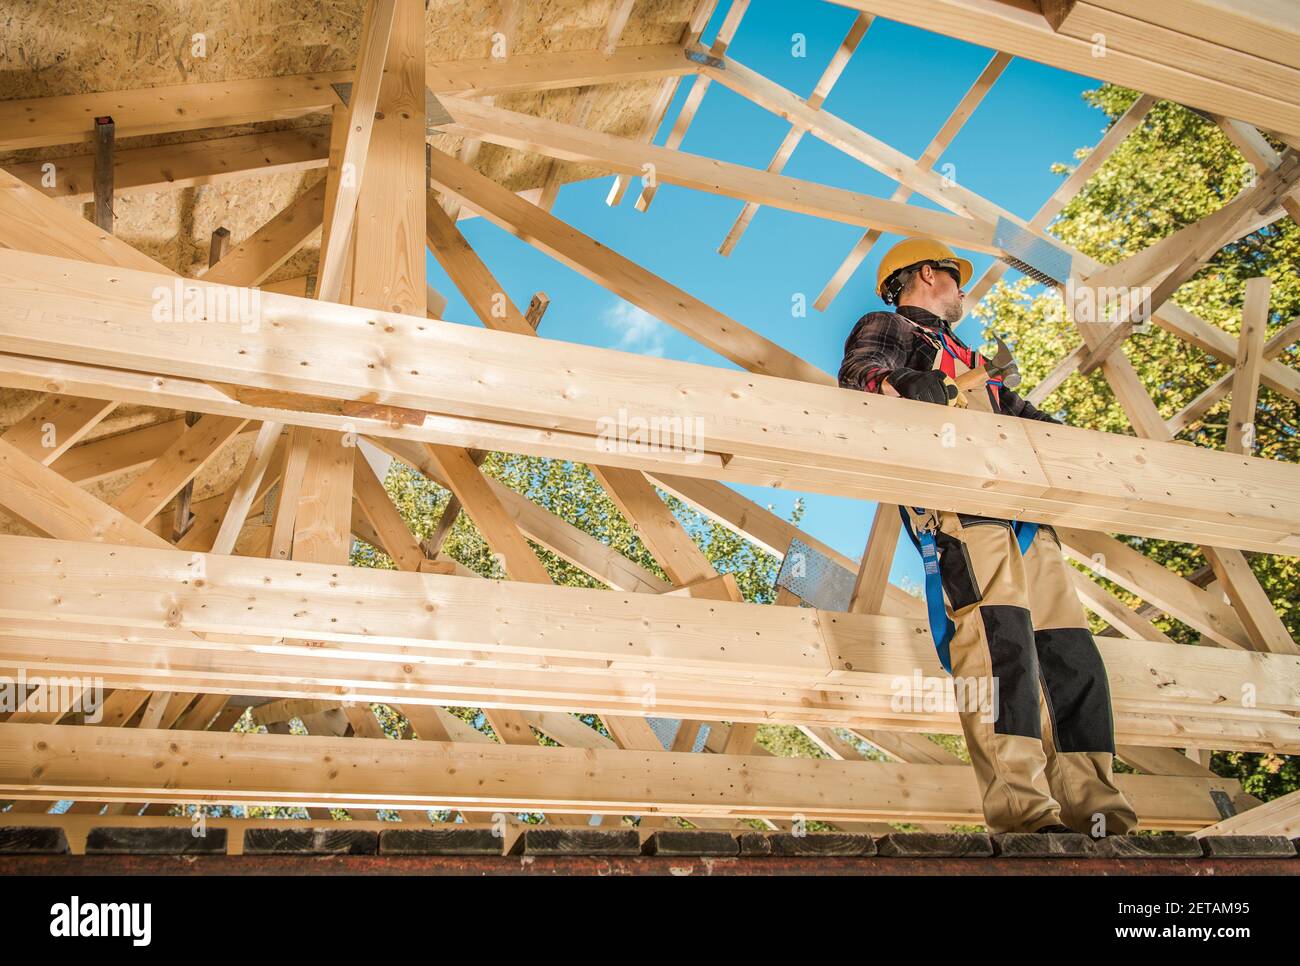 Squelette en bois de l'édifice de la maison. Travailleur d'entrepreneur caucasien sur le cadre Attic. Thème industriel. Banque D'Images